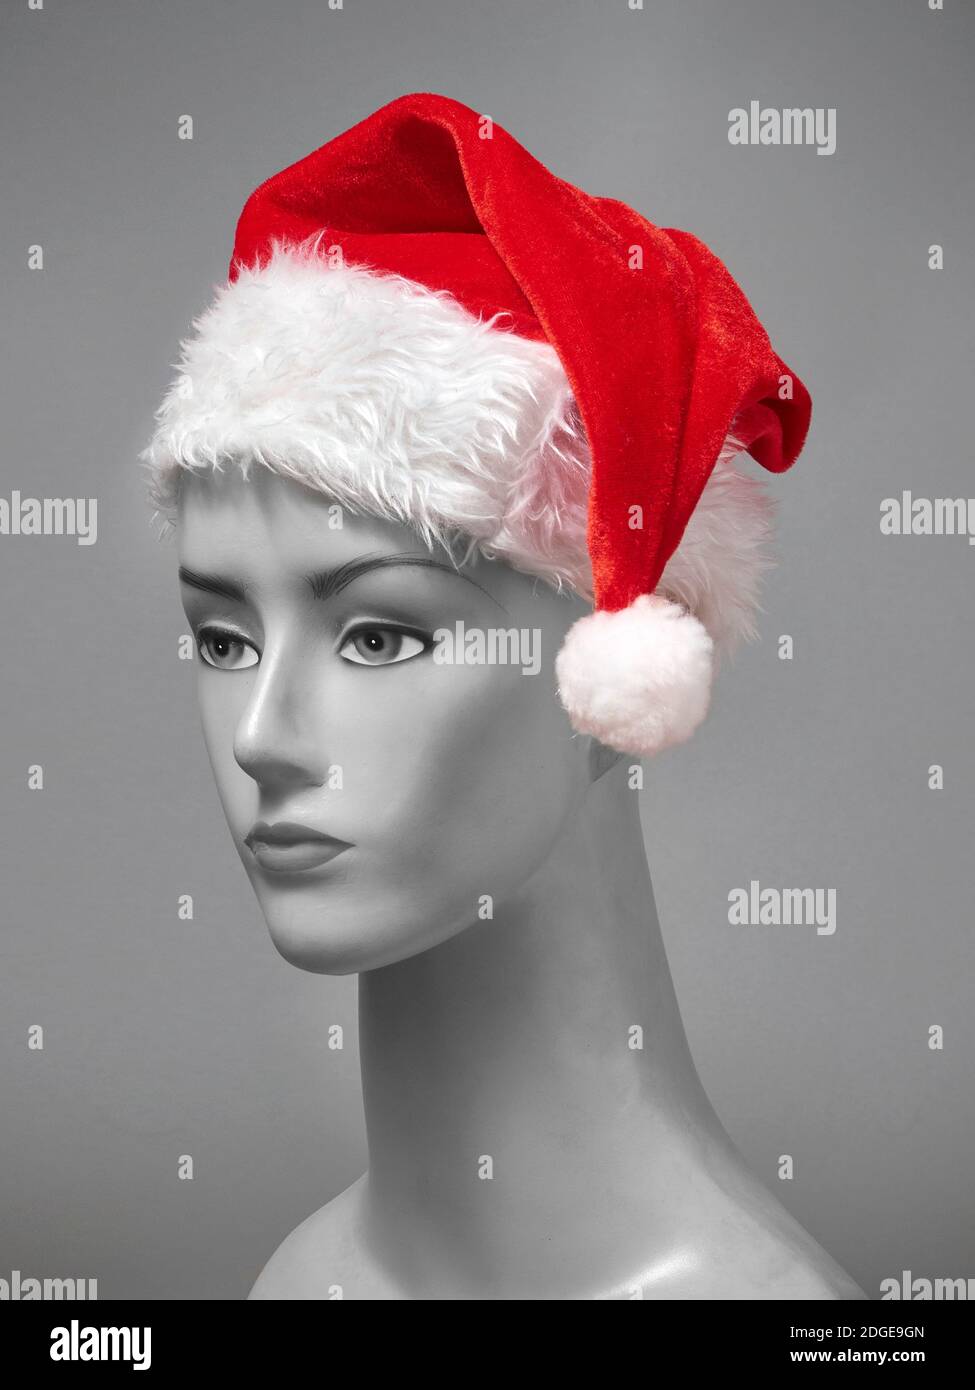 Stock Bild von Santa Claus Hut mit grauen Schaufensterpuppe Stockfoto